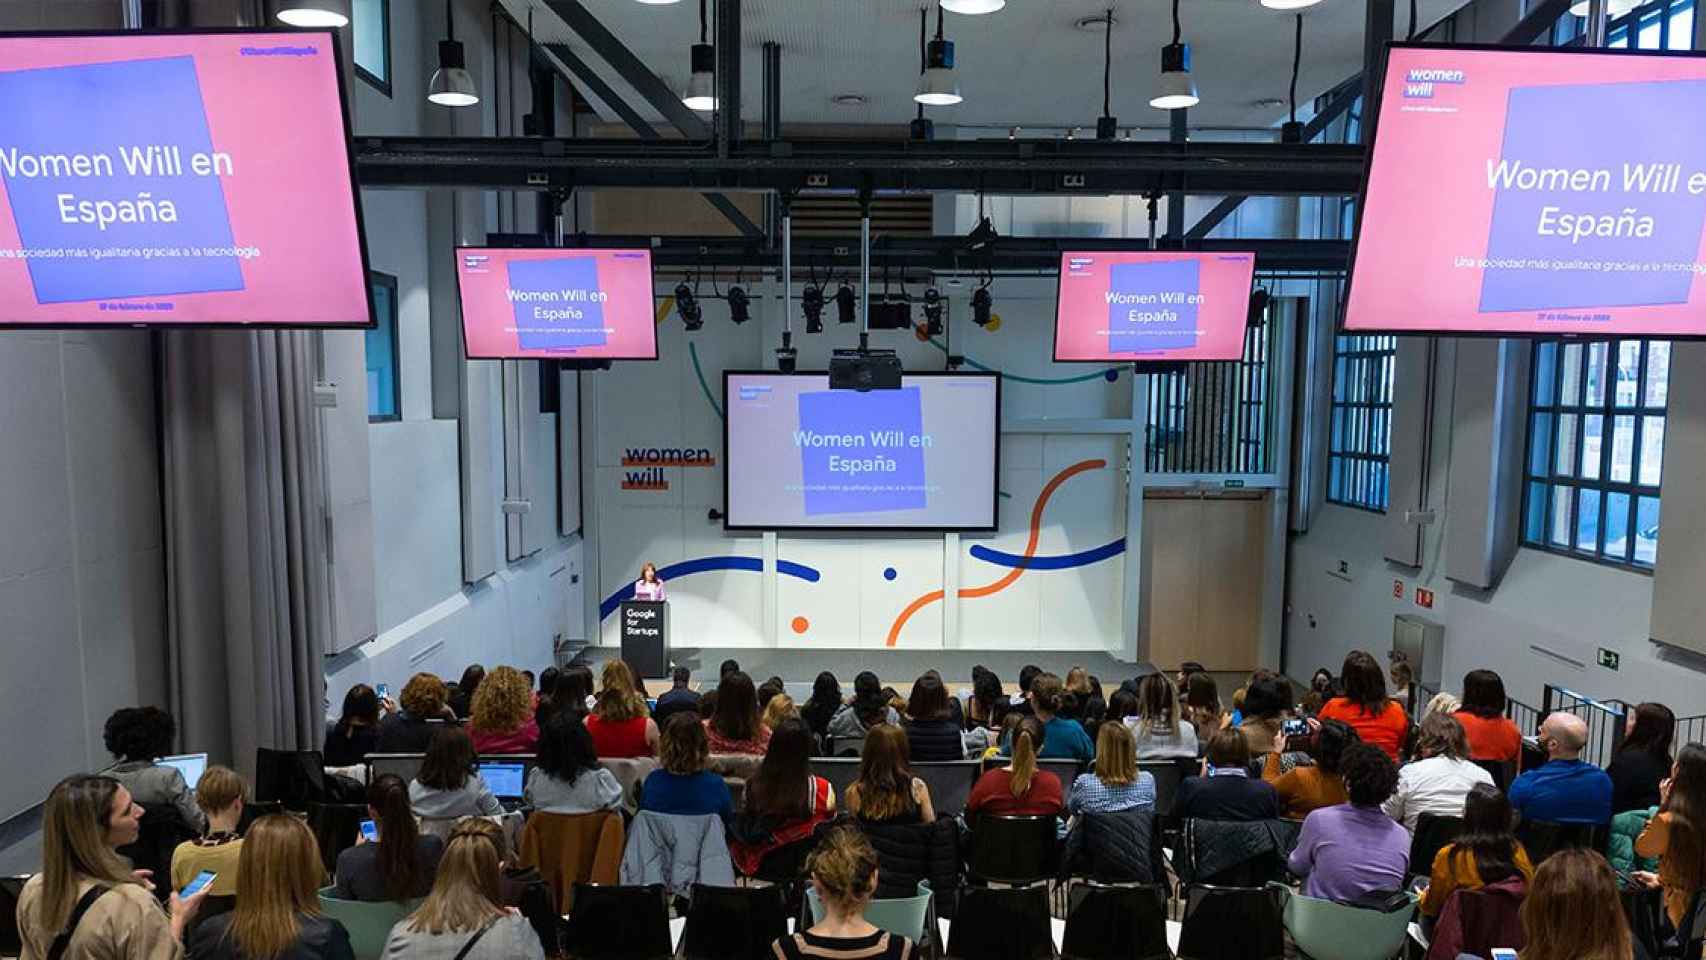 La presentación de la iniciativa Women Will de Google en España